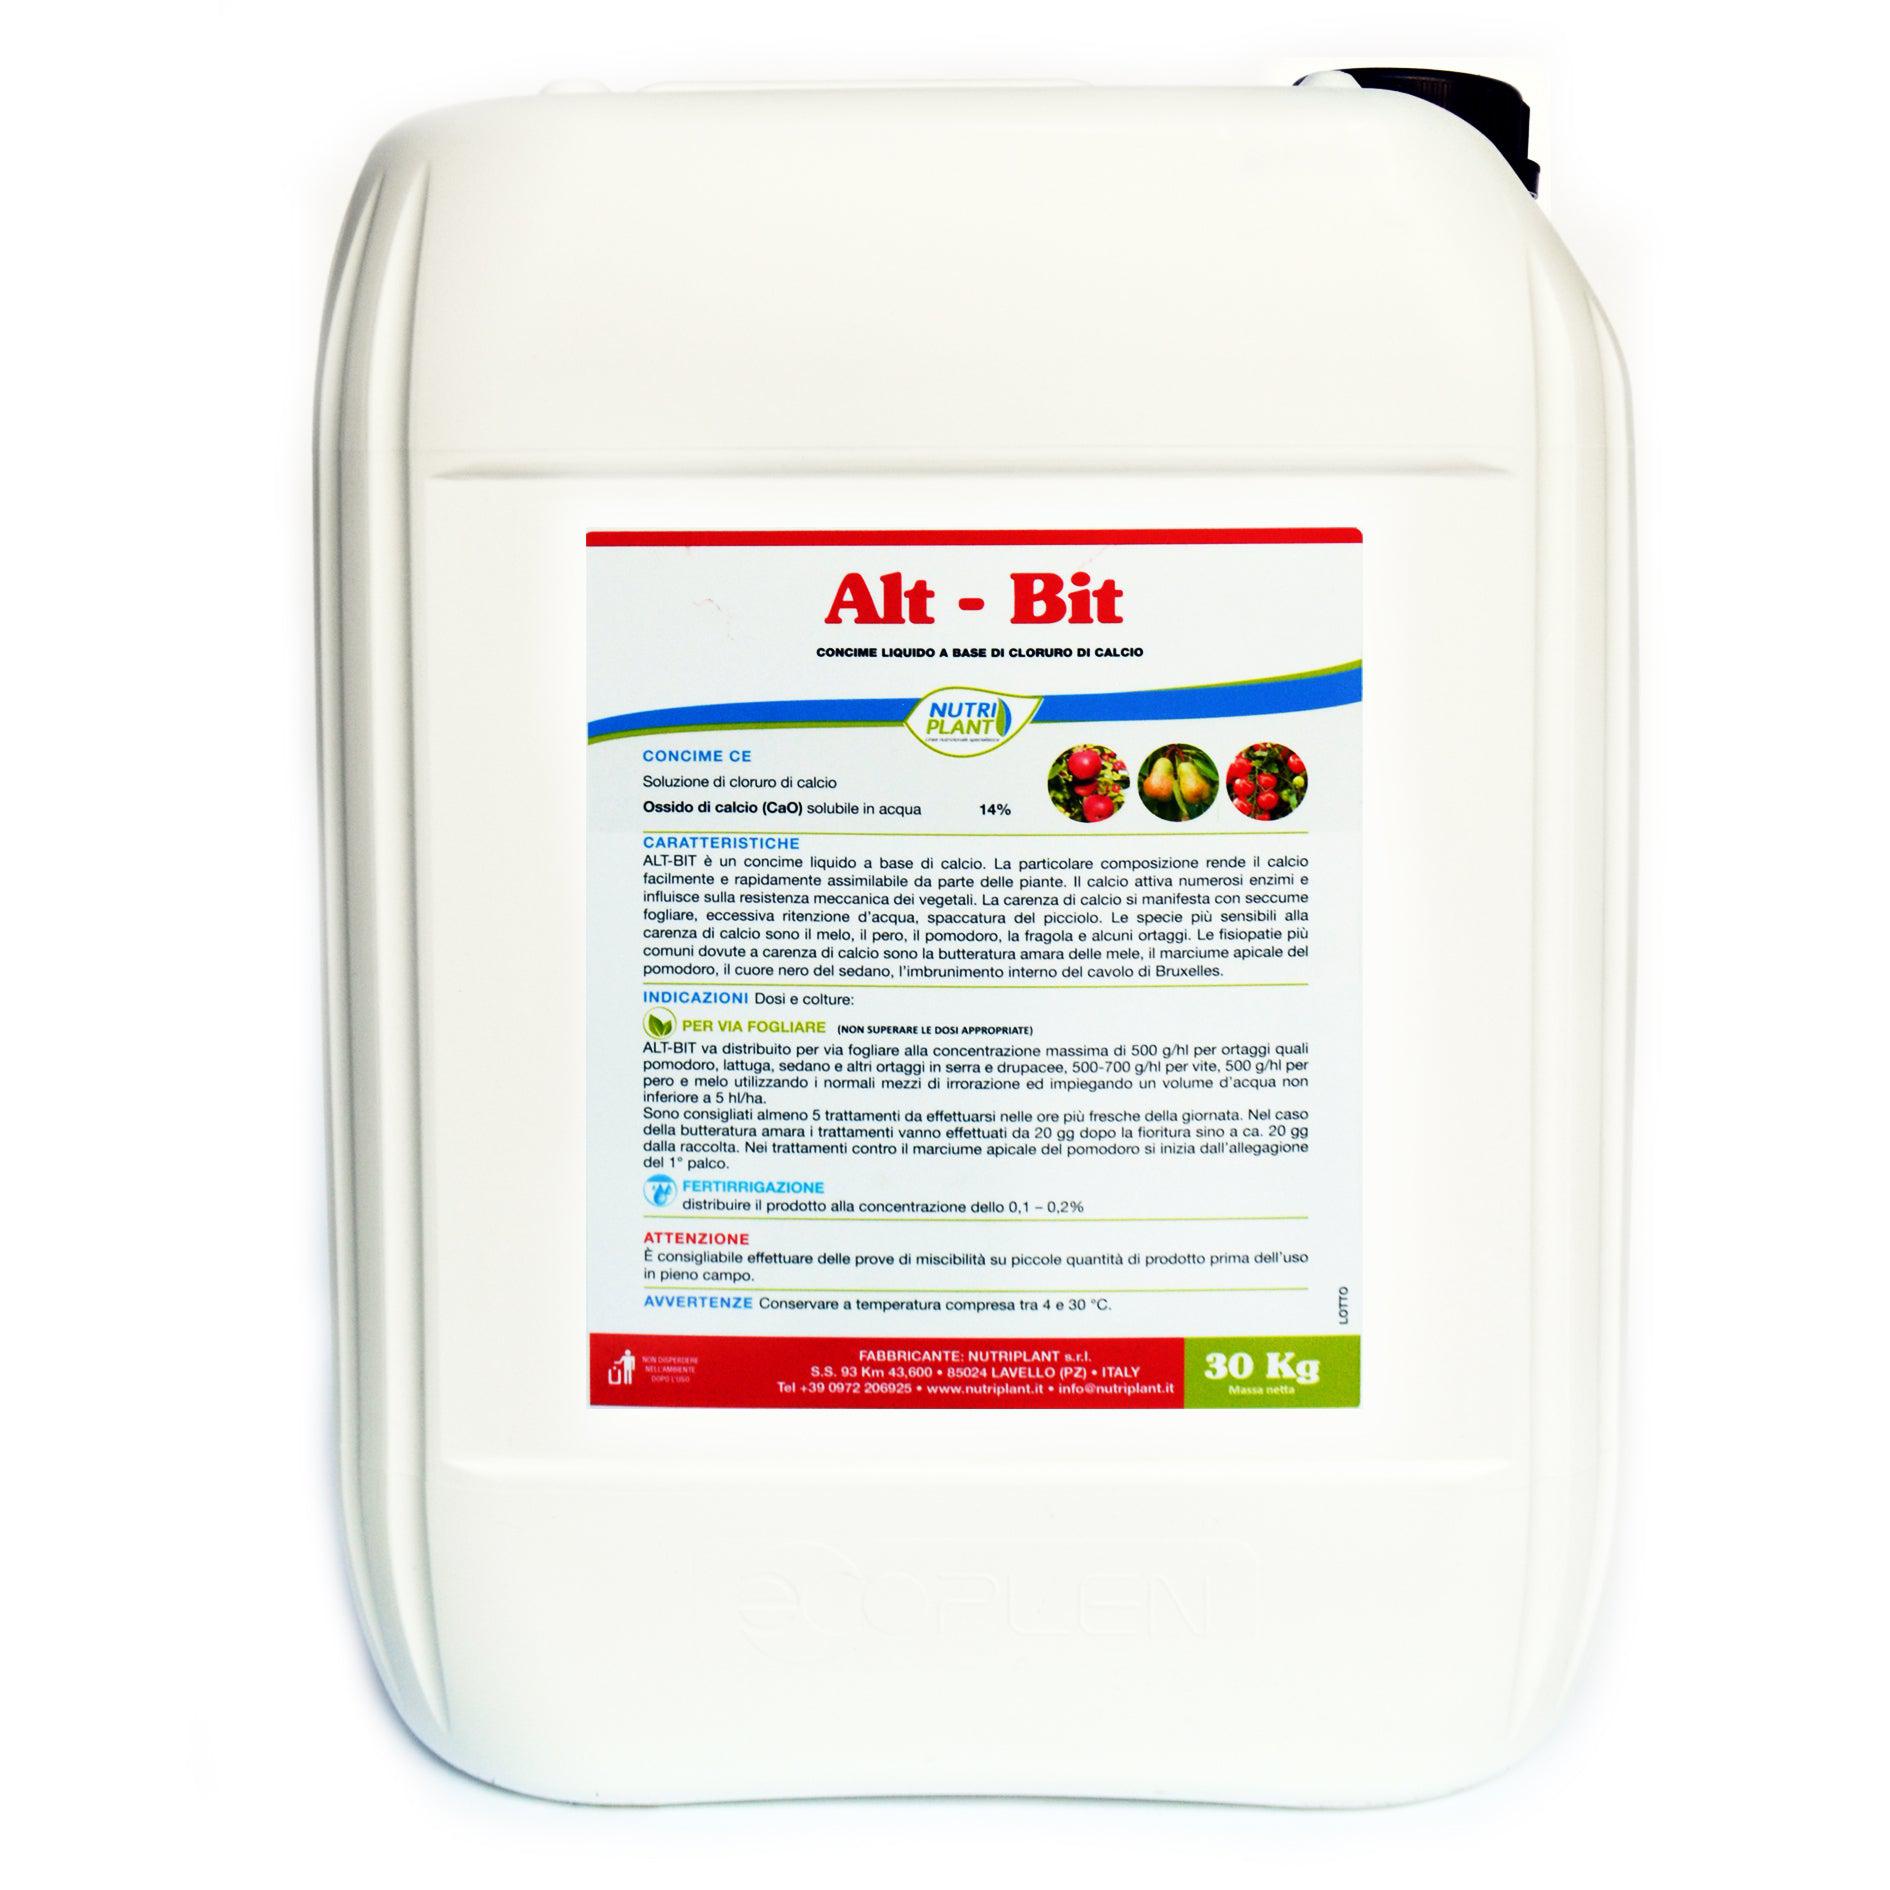 ALT-Bit concime soluzione di cloruro di calcio – Ecanshop